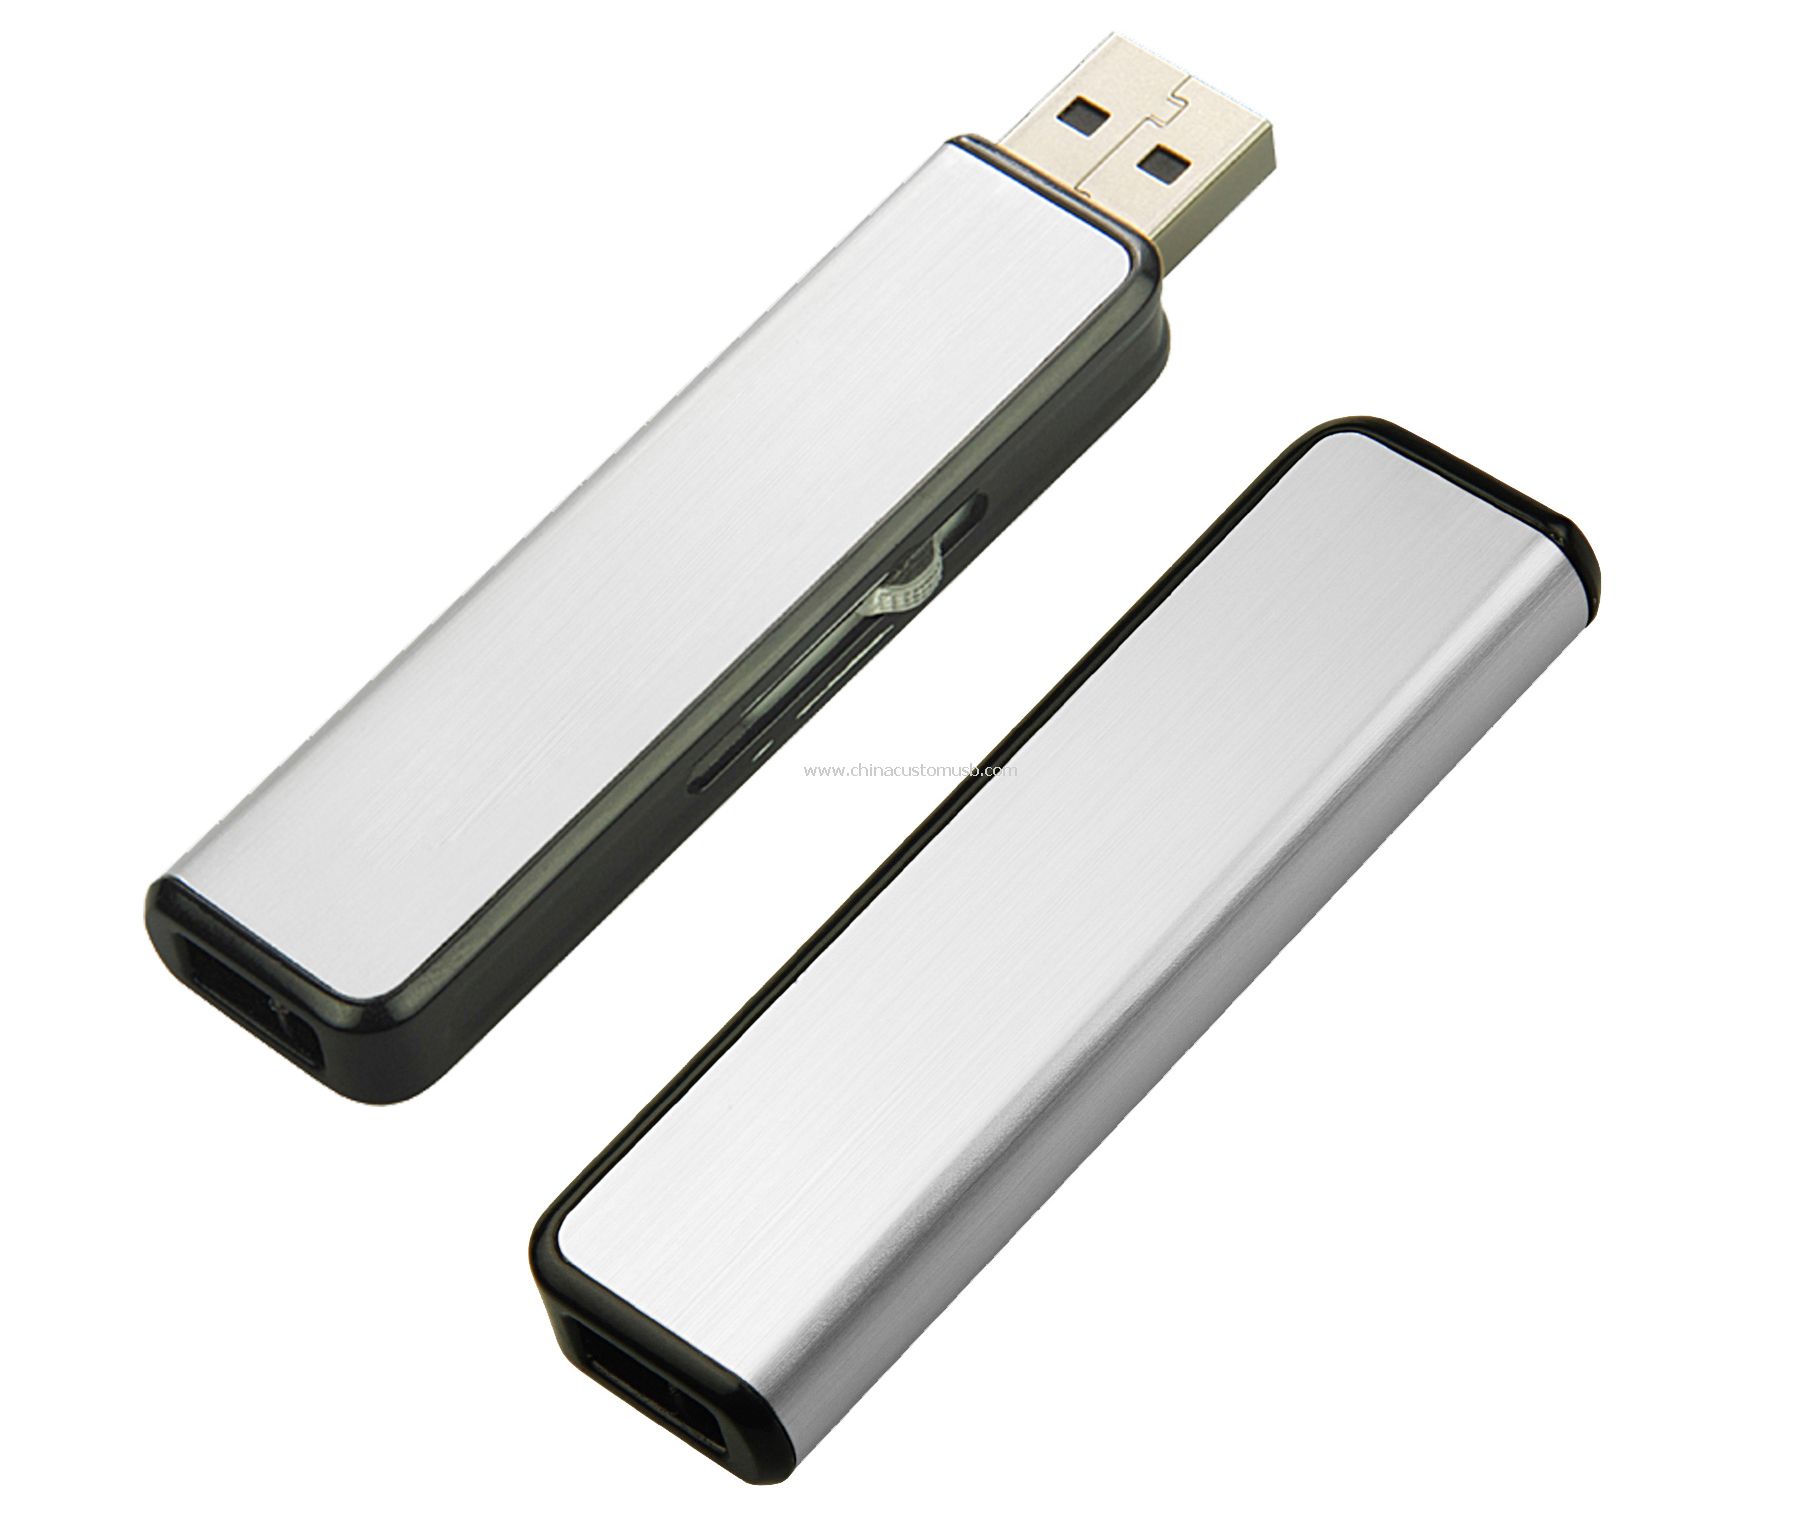 İtme-çekme USB sürücü ile alüminyum kapağı